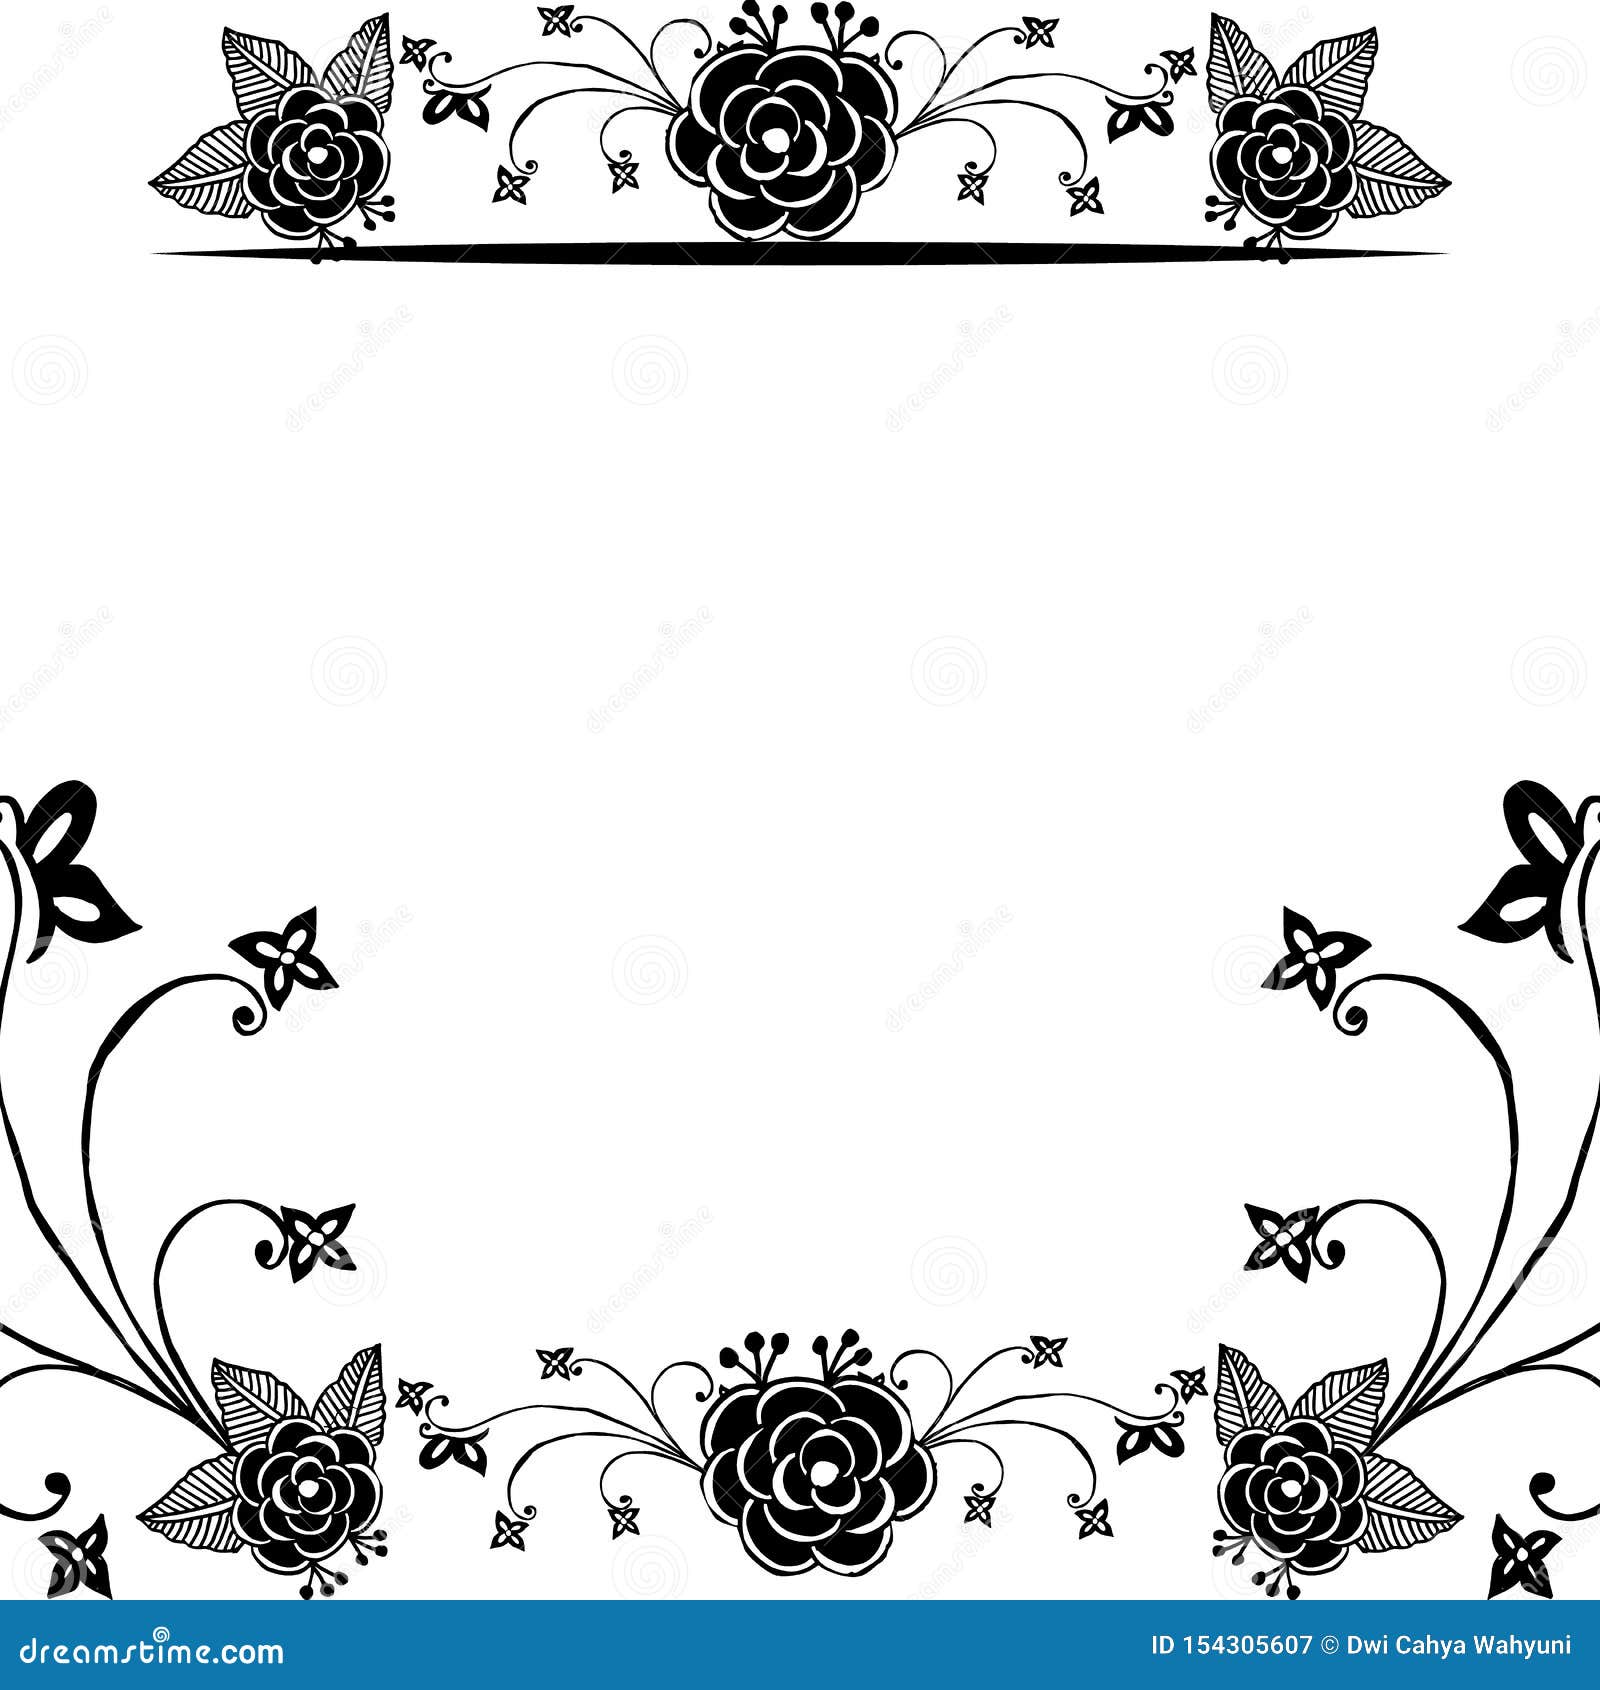 Khung hoa độc đáo đen trắng: Hãy chiêm ngưỡng khung hoa độc đáo đen trắng với thiết kế đẹp mắt và sáng tạo, khung hoa này sẽ tôn lên vẻ đẹp của bức tranh hoặc ảnh của bạn. Với chi tiết hoa và lá cực kỳ tỉ mỉ và chắc chắn, khung hoa đen trắng sẽ làm cho tác phẩm của bạn trở nên thật nổi bật và độc đáo.